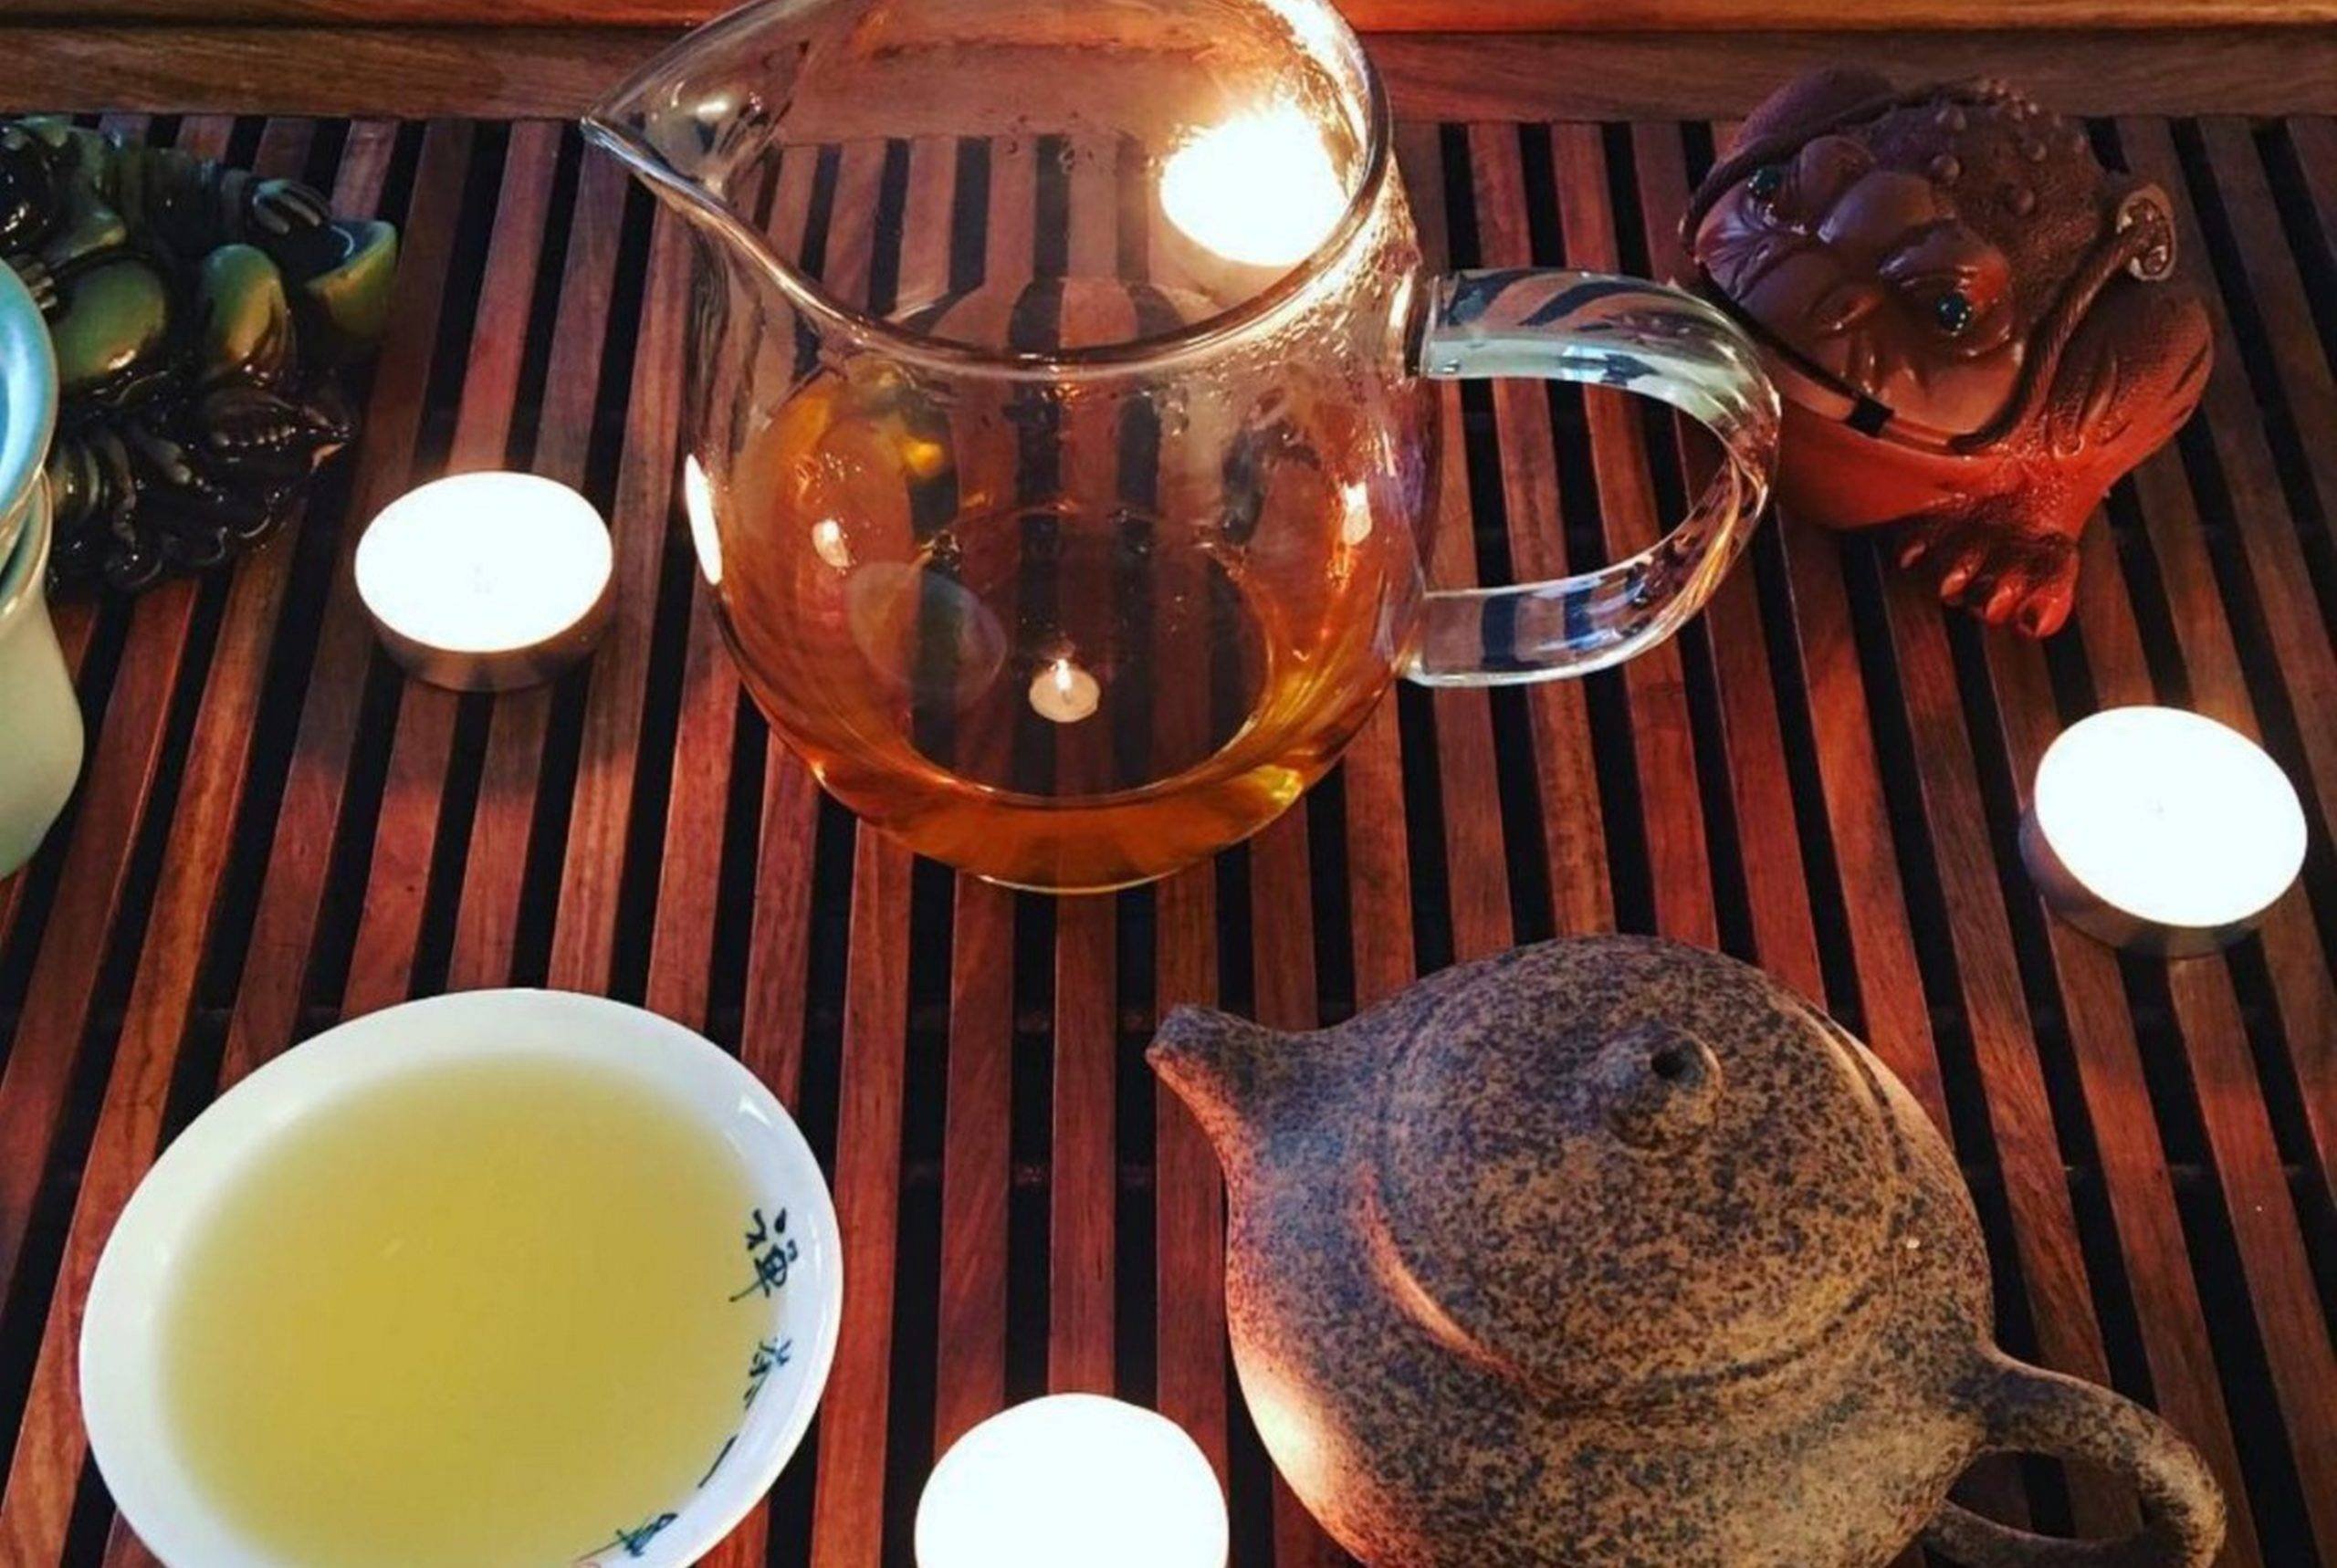 Китайский чай габа